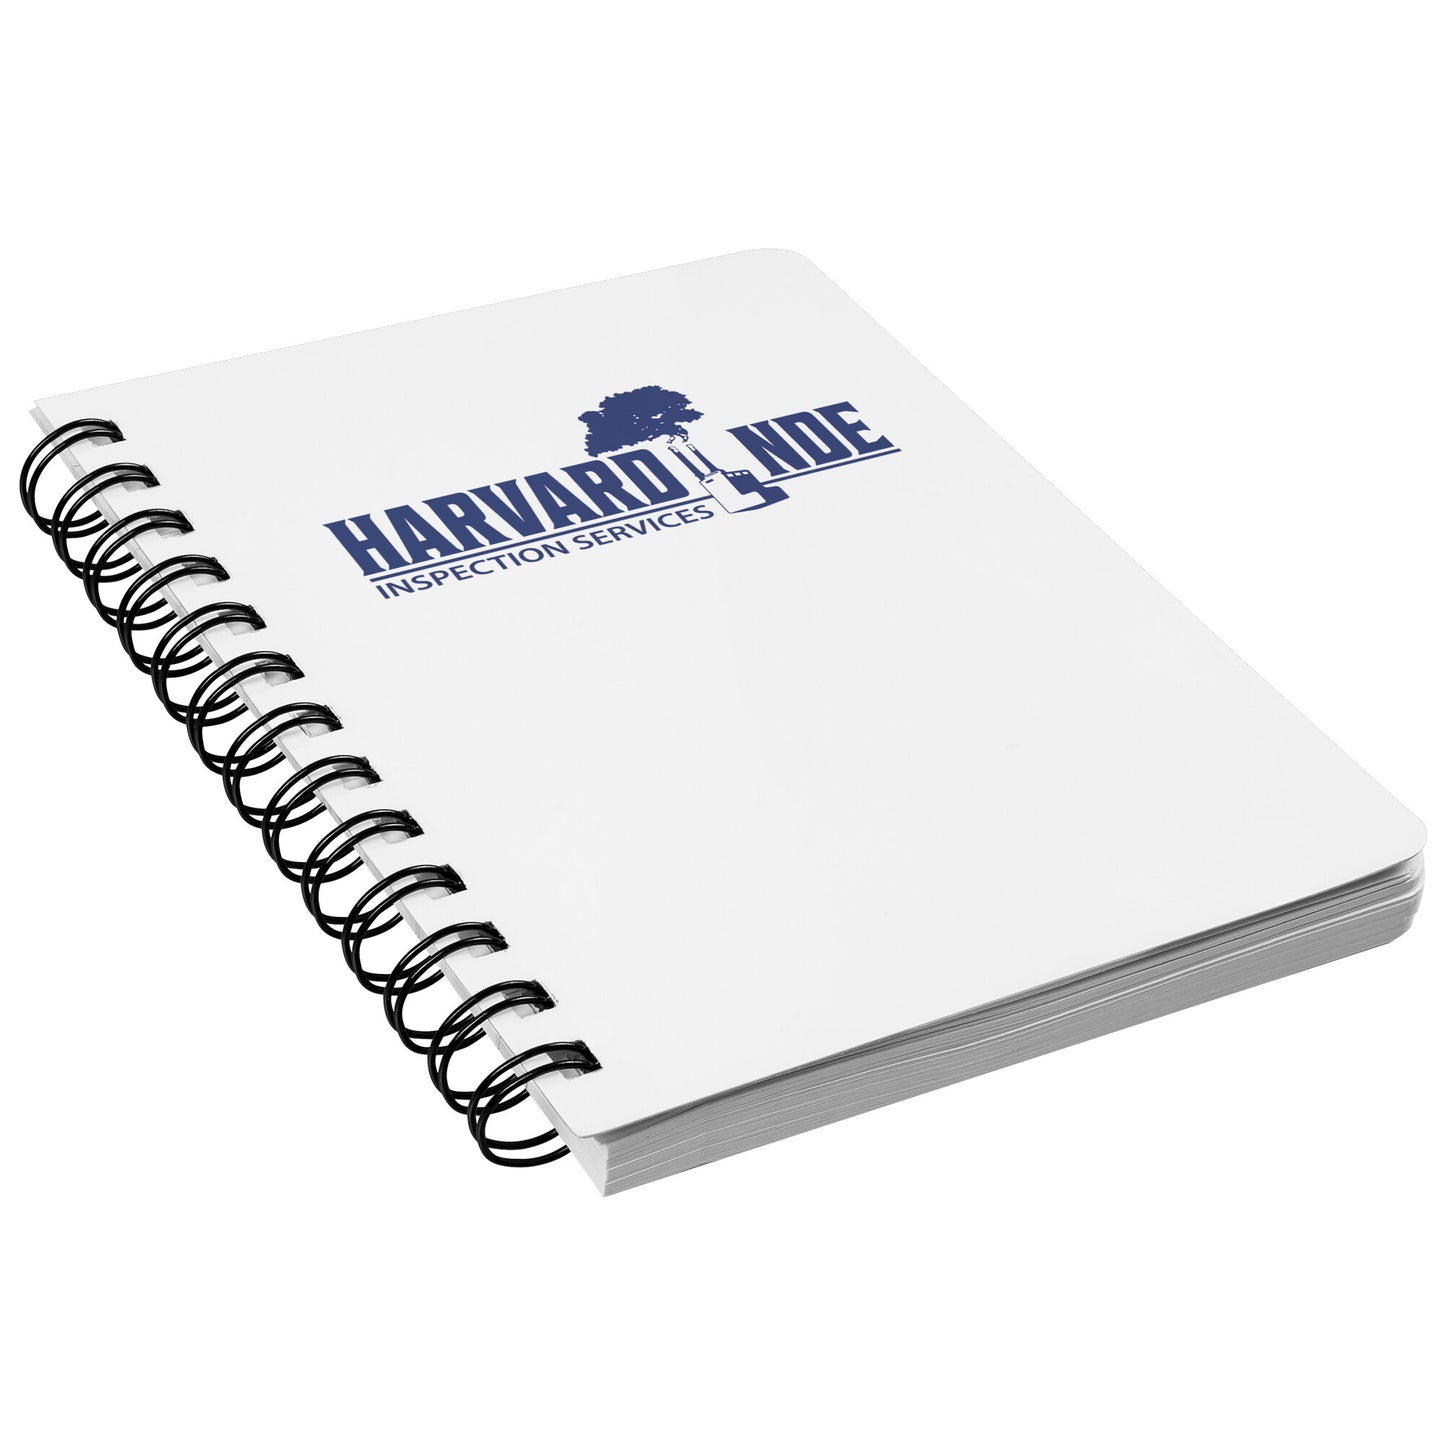 Harvard NDE Spiralbound Notebook